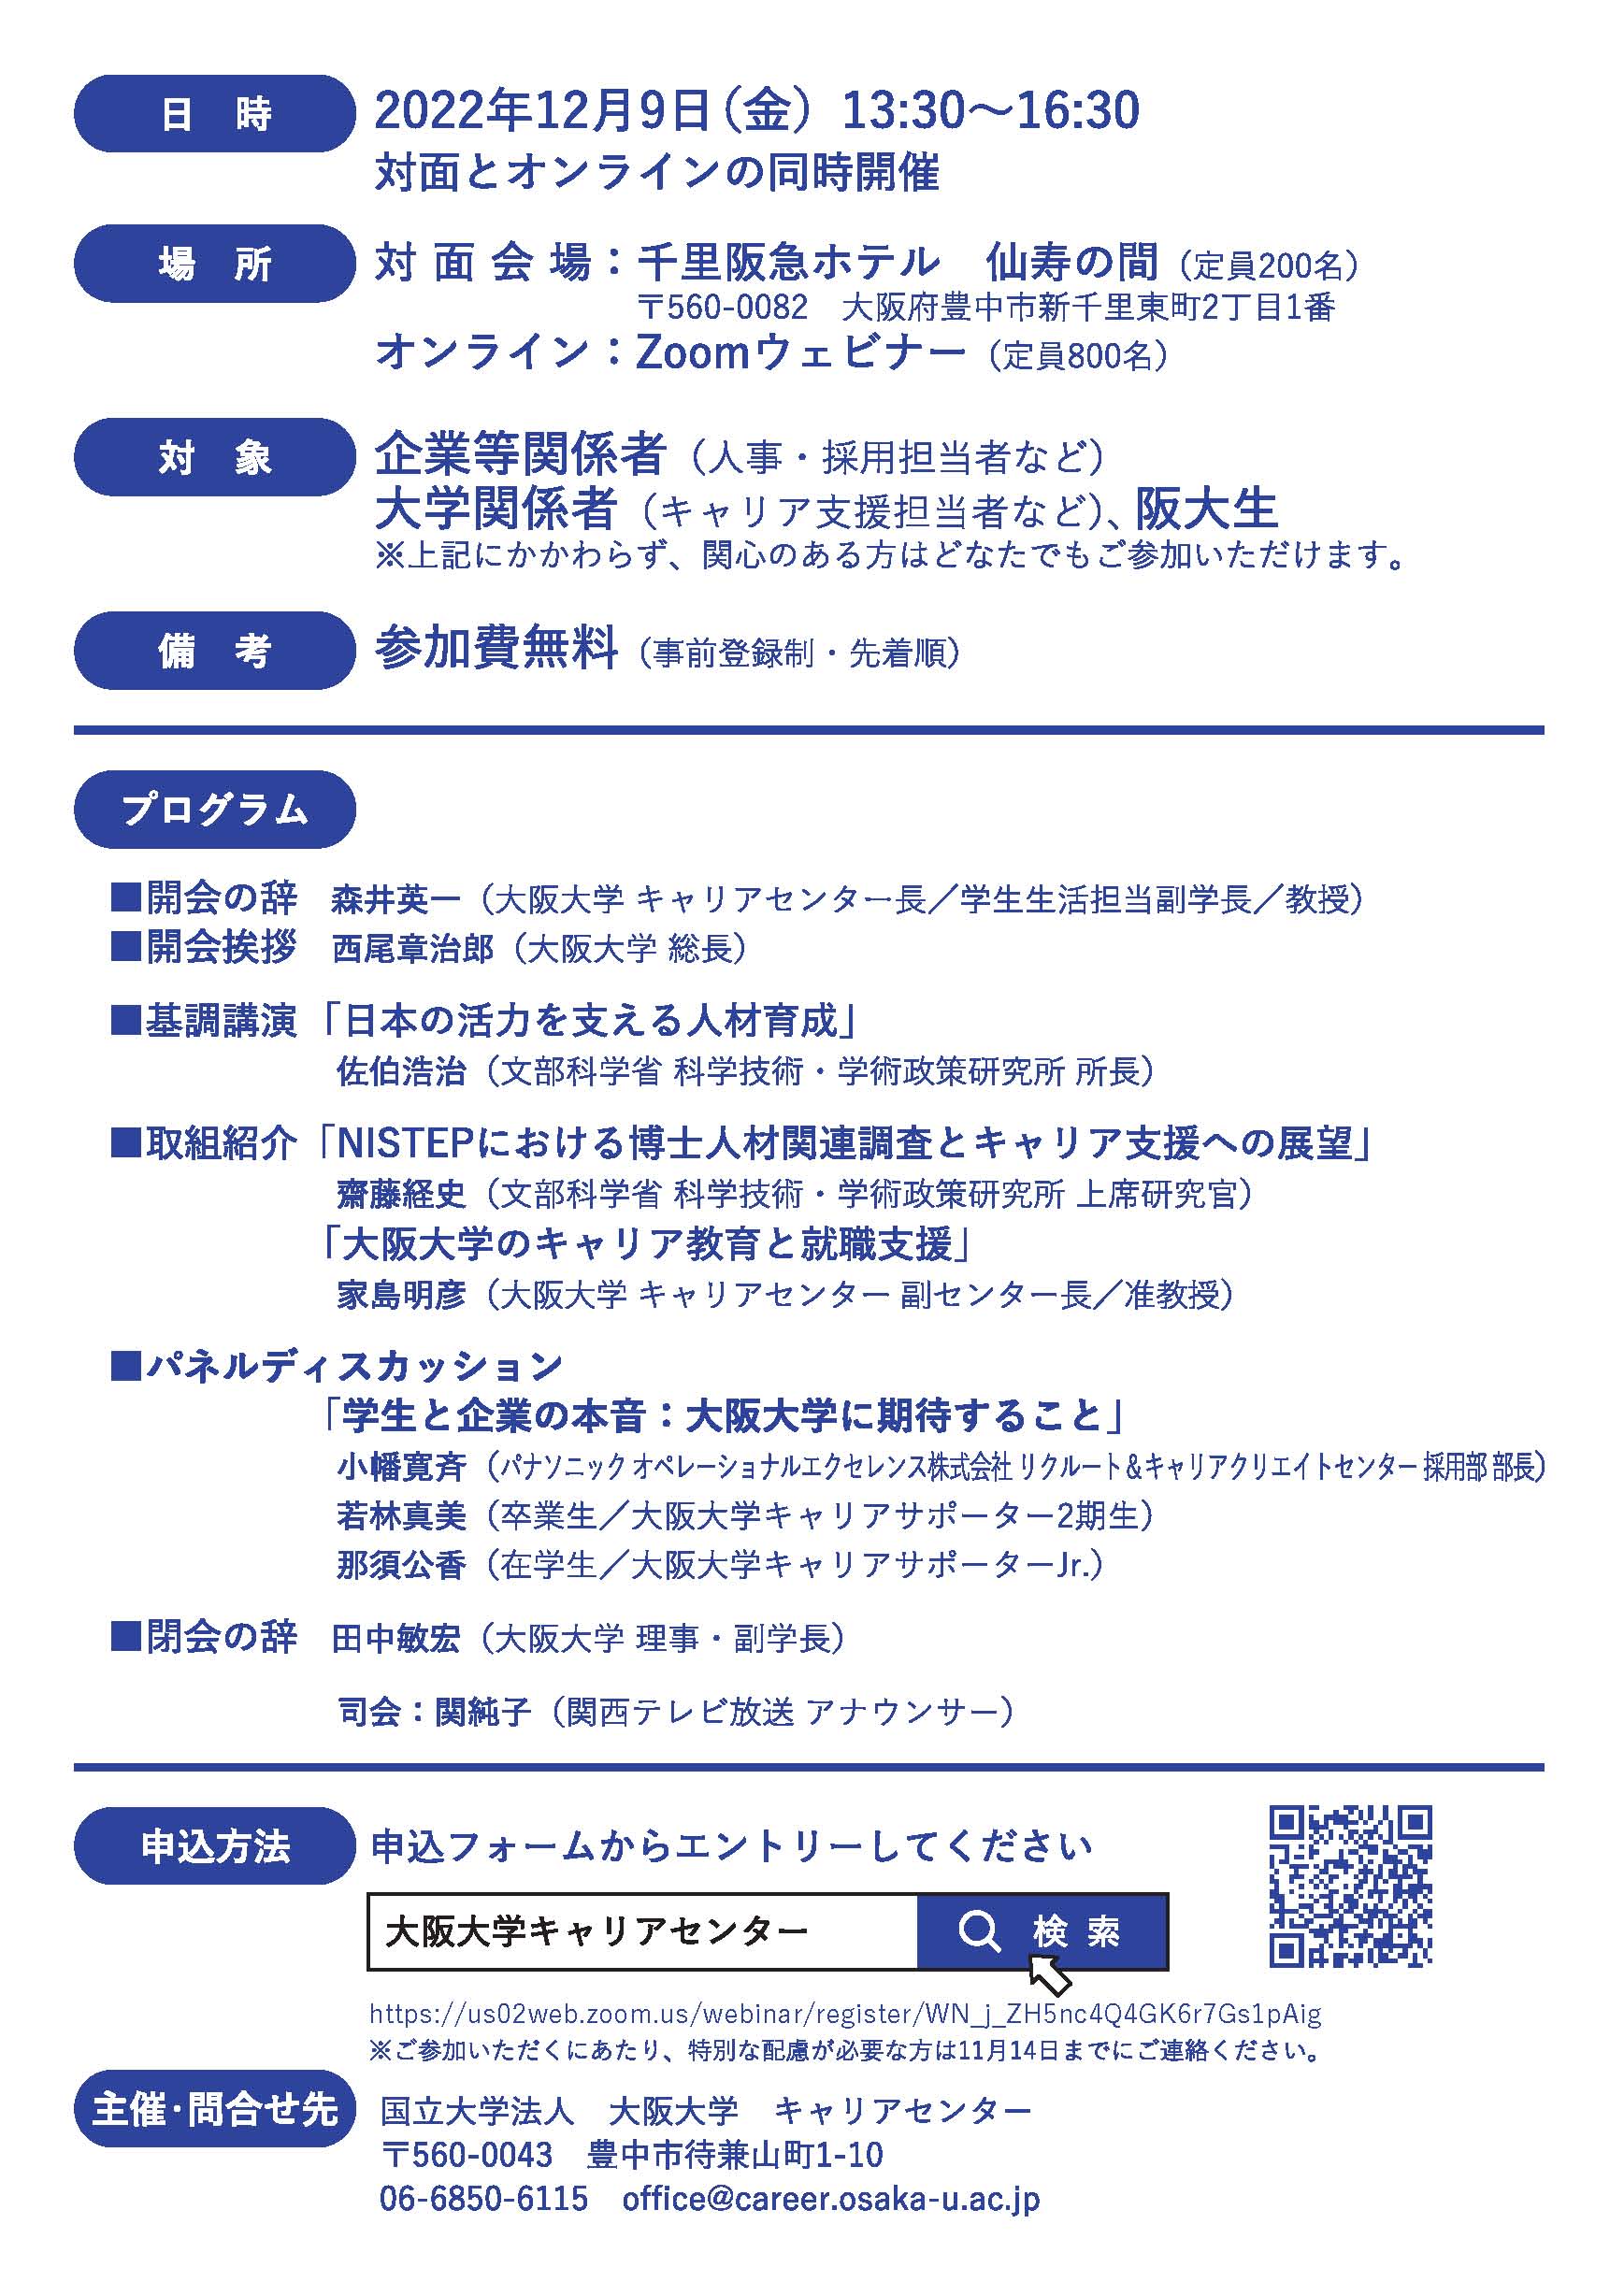 大阪大学キャリアセンター設立5周年記念シンポジウムフライヤ裏面